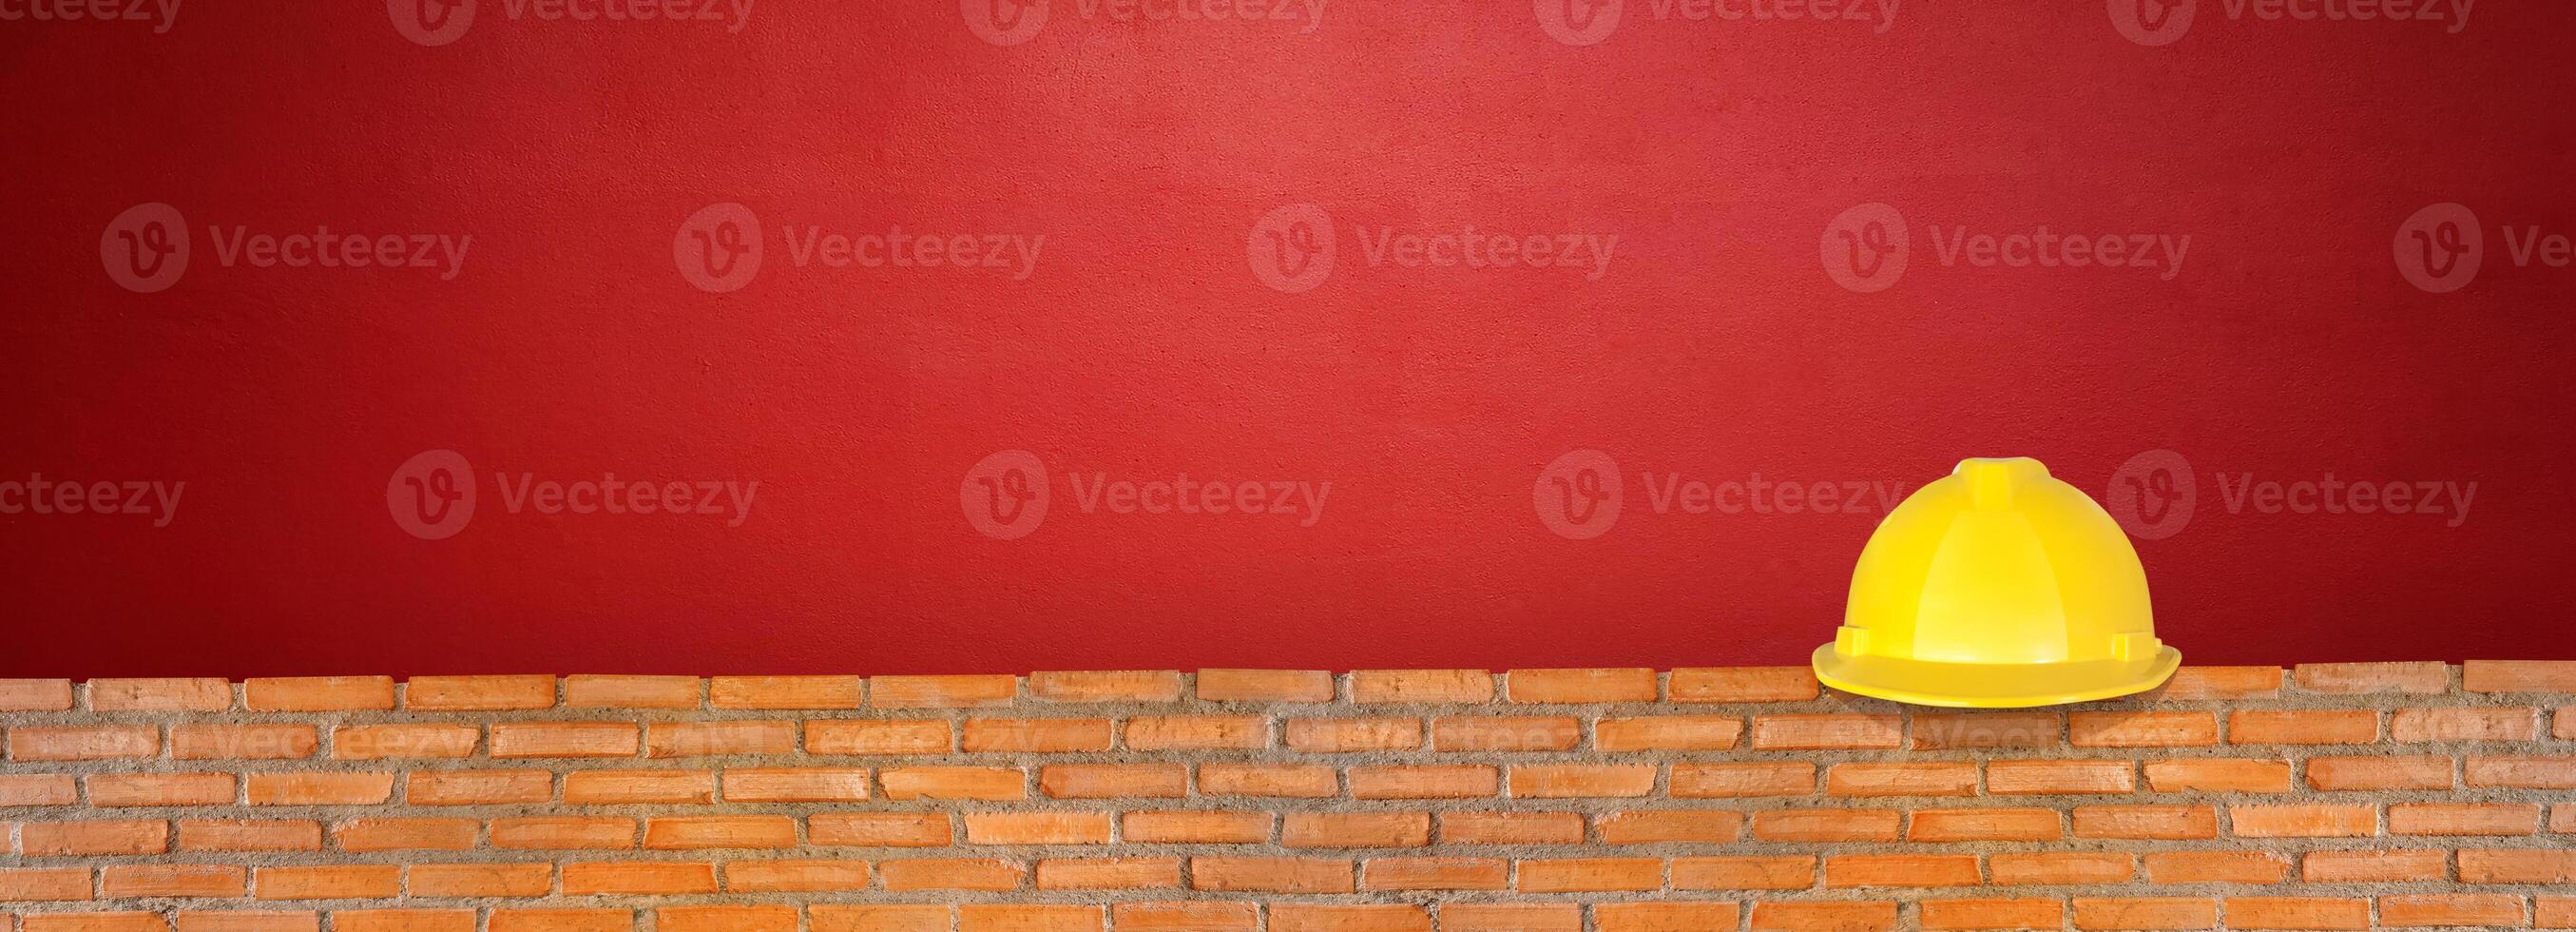 capacete em vermelho tijolo parede vermelho cimento chão foto